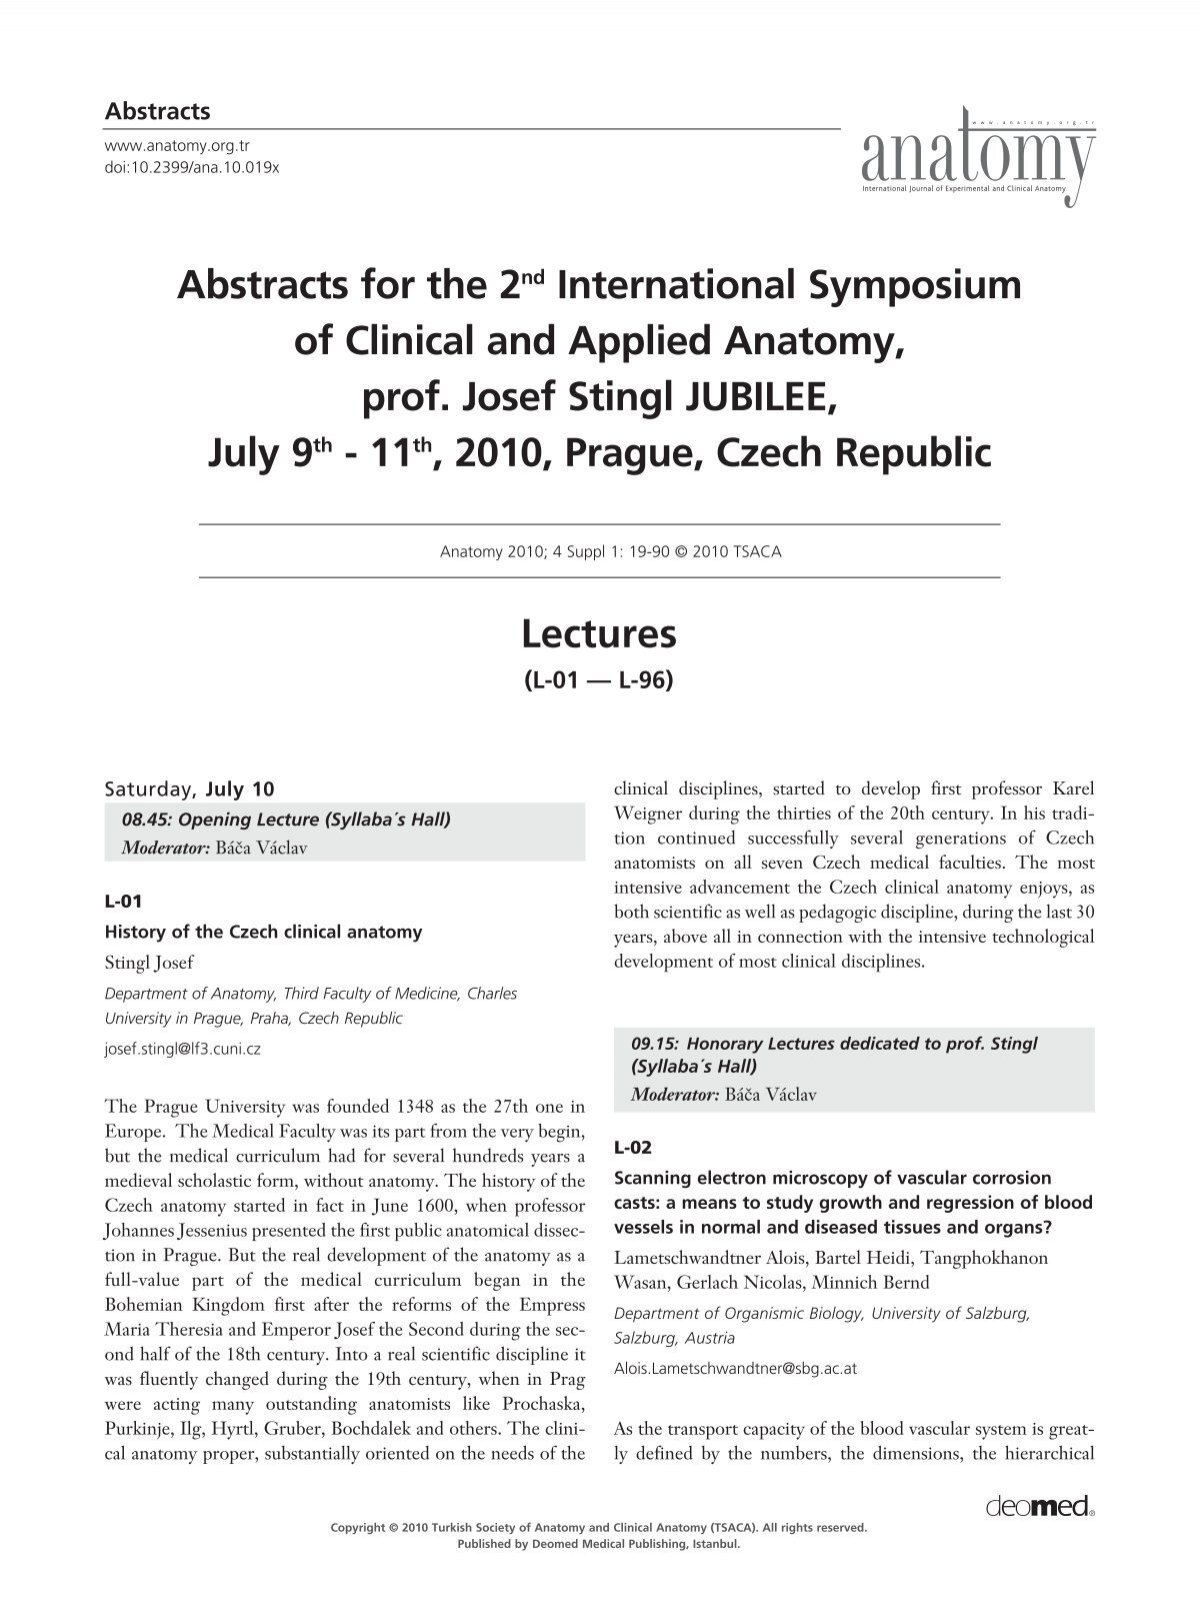 11th, 2010, Prague, Czech Republic - International Journal of